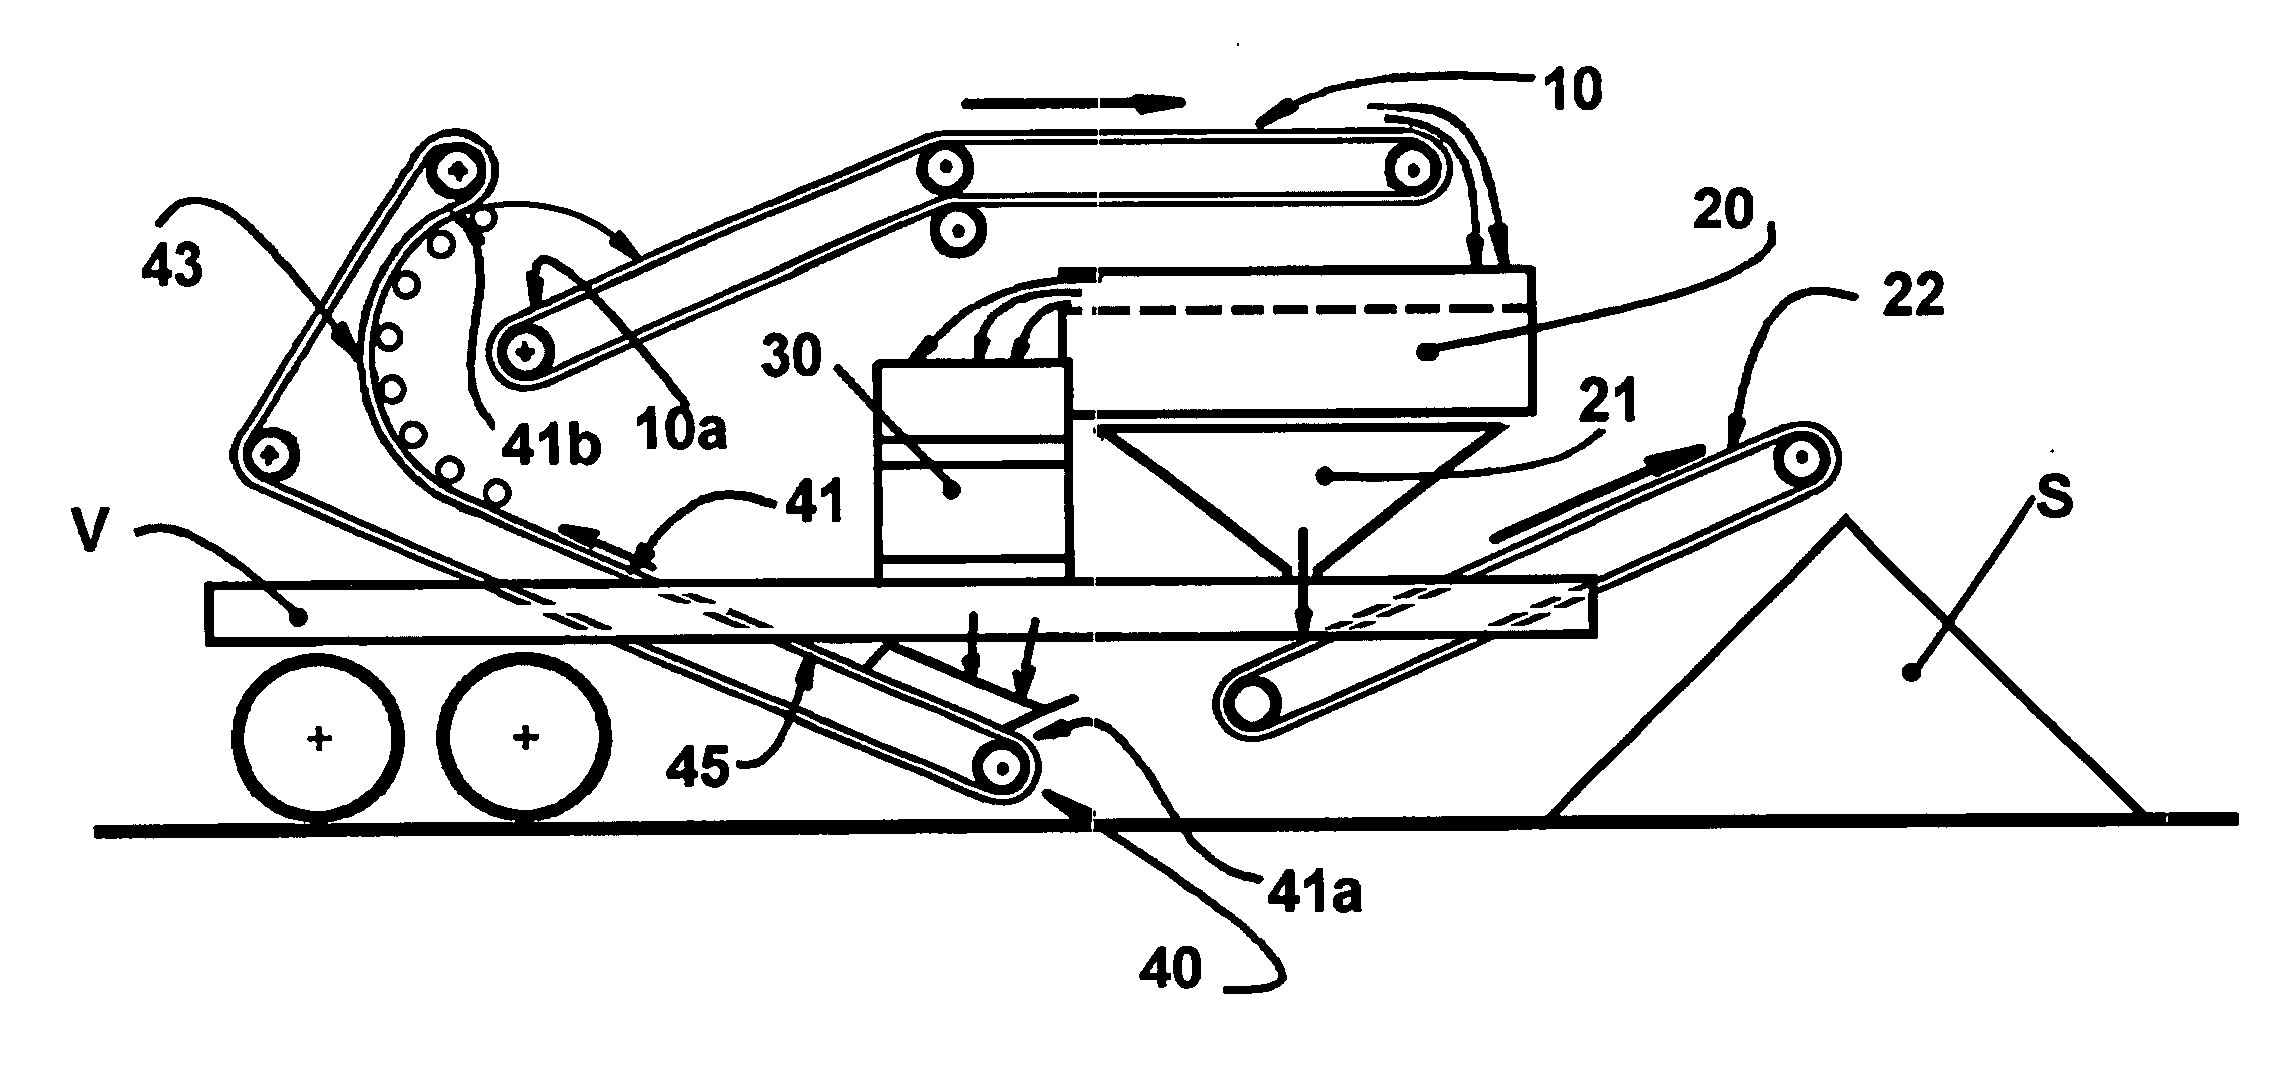 Belt conveyor and crushing unit